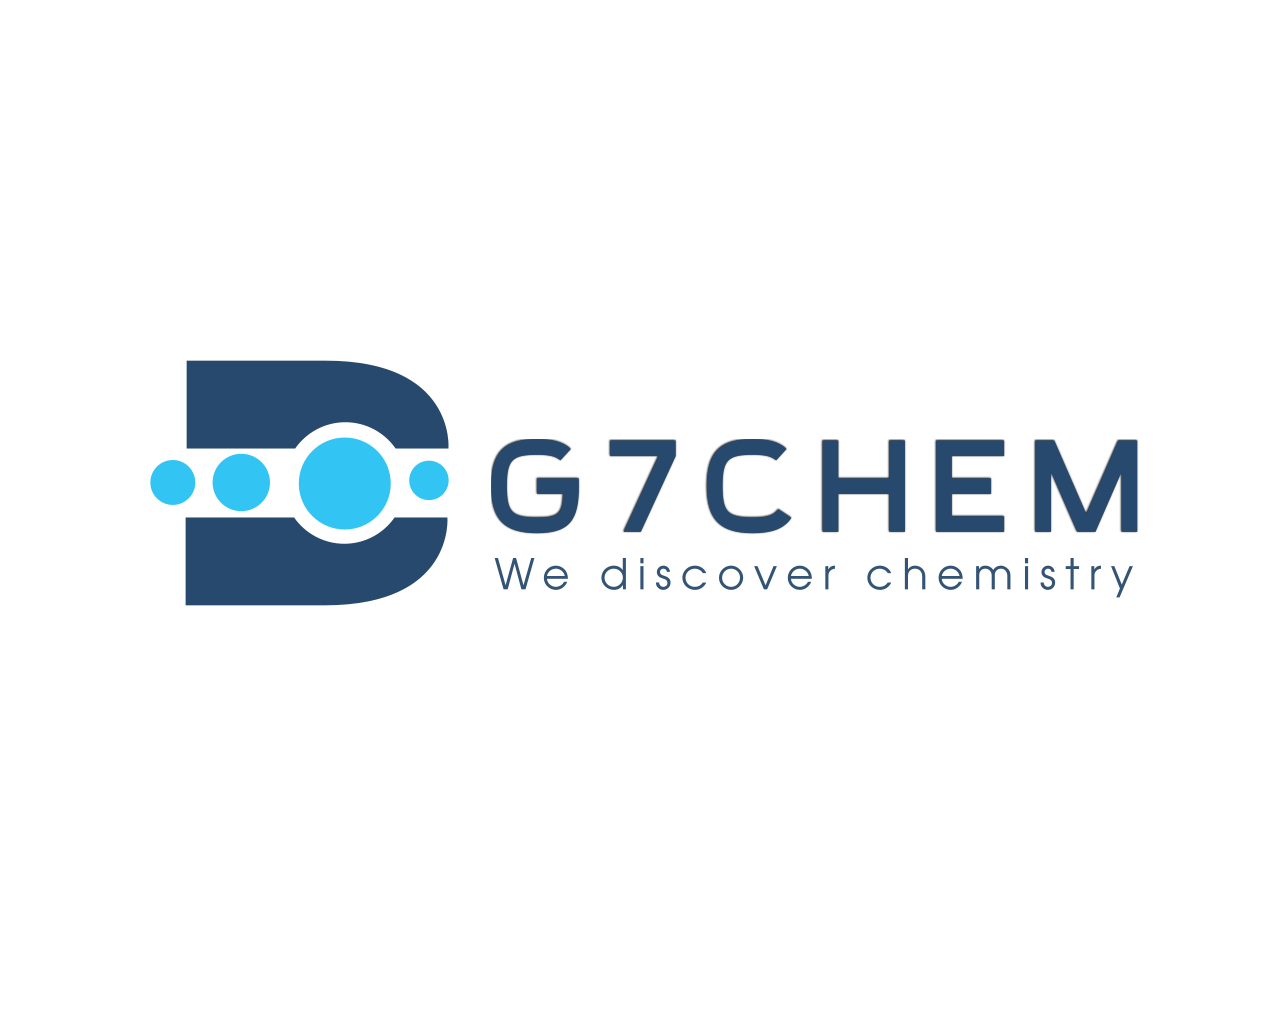 Dung dịch Pepsin-Hydrochloric Acid làm sạch điện cực bị bám dính bởi protein (công nghiệp thực phẩm), G7Chem, VN